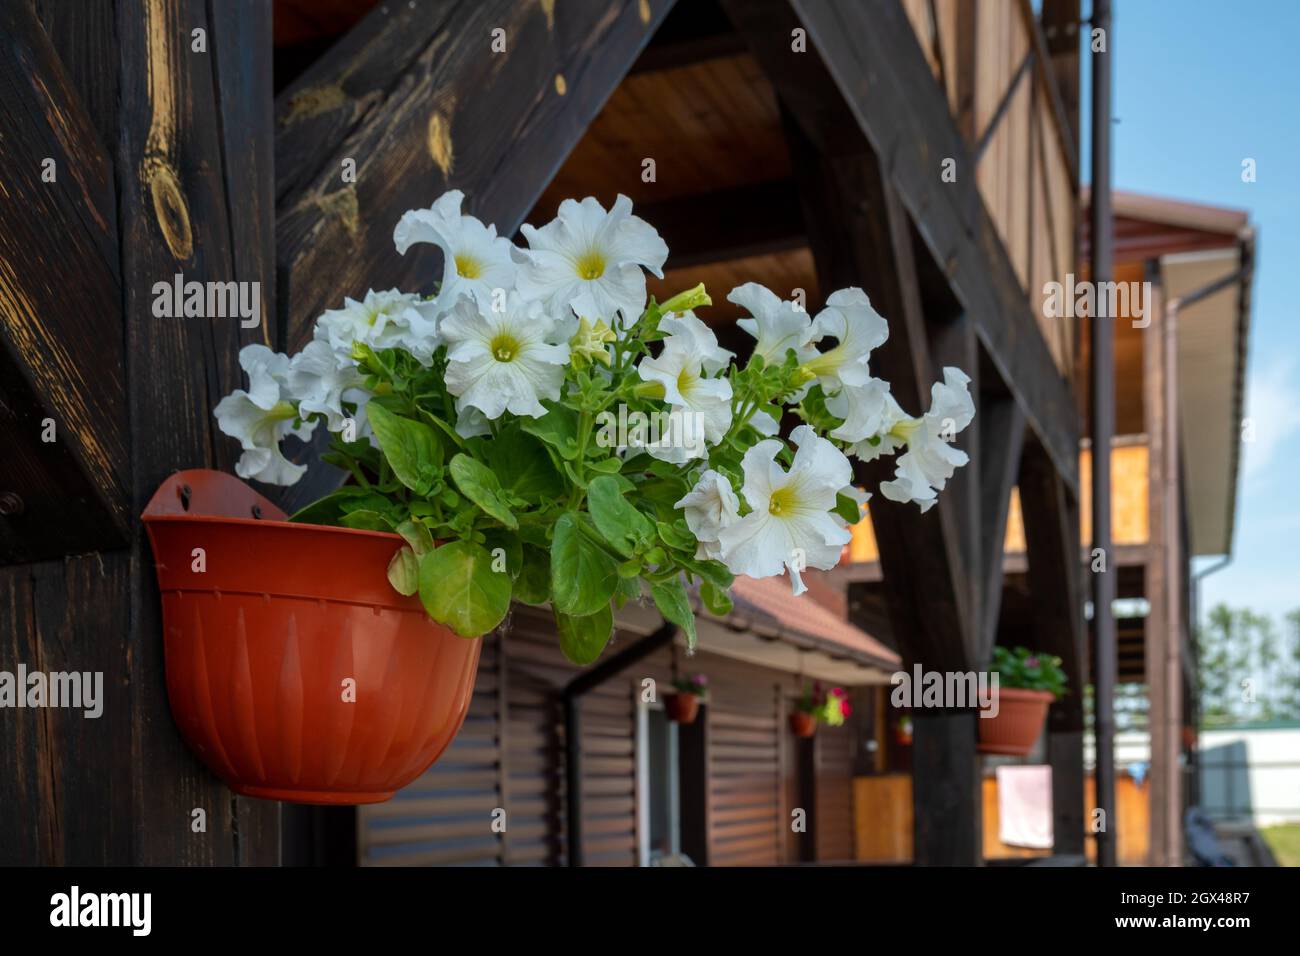 Un pot de fleurs avec une pétunia blanche en fleurs de la variété Mambo F1 est suspendu sur un poteau en bois à l'extérieur de la maison à l'ombre, le jour d'été ensoleillé. Banque D'Images